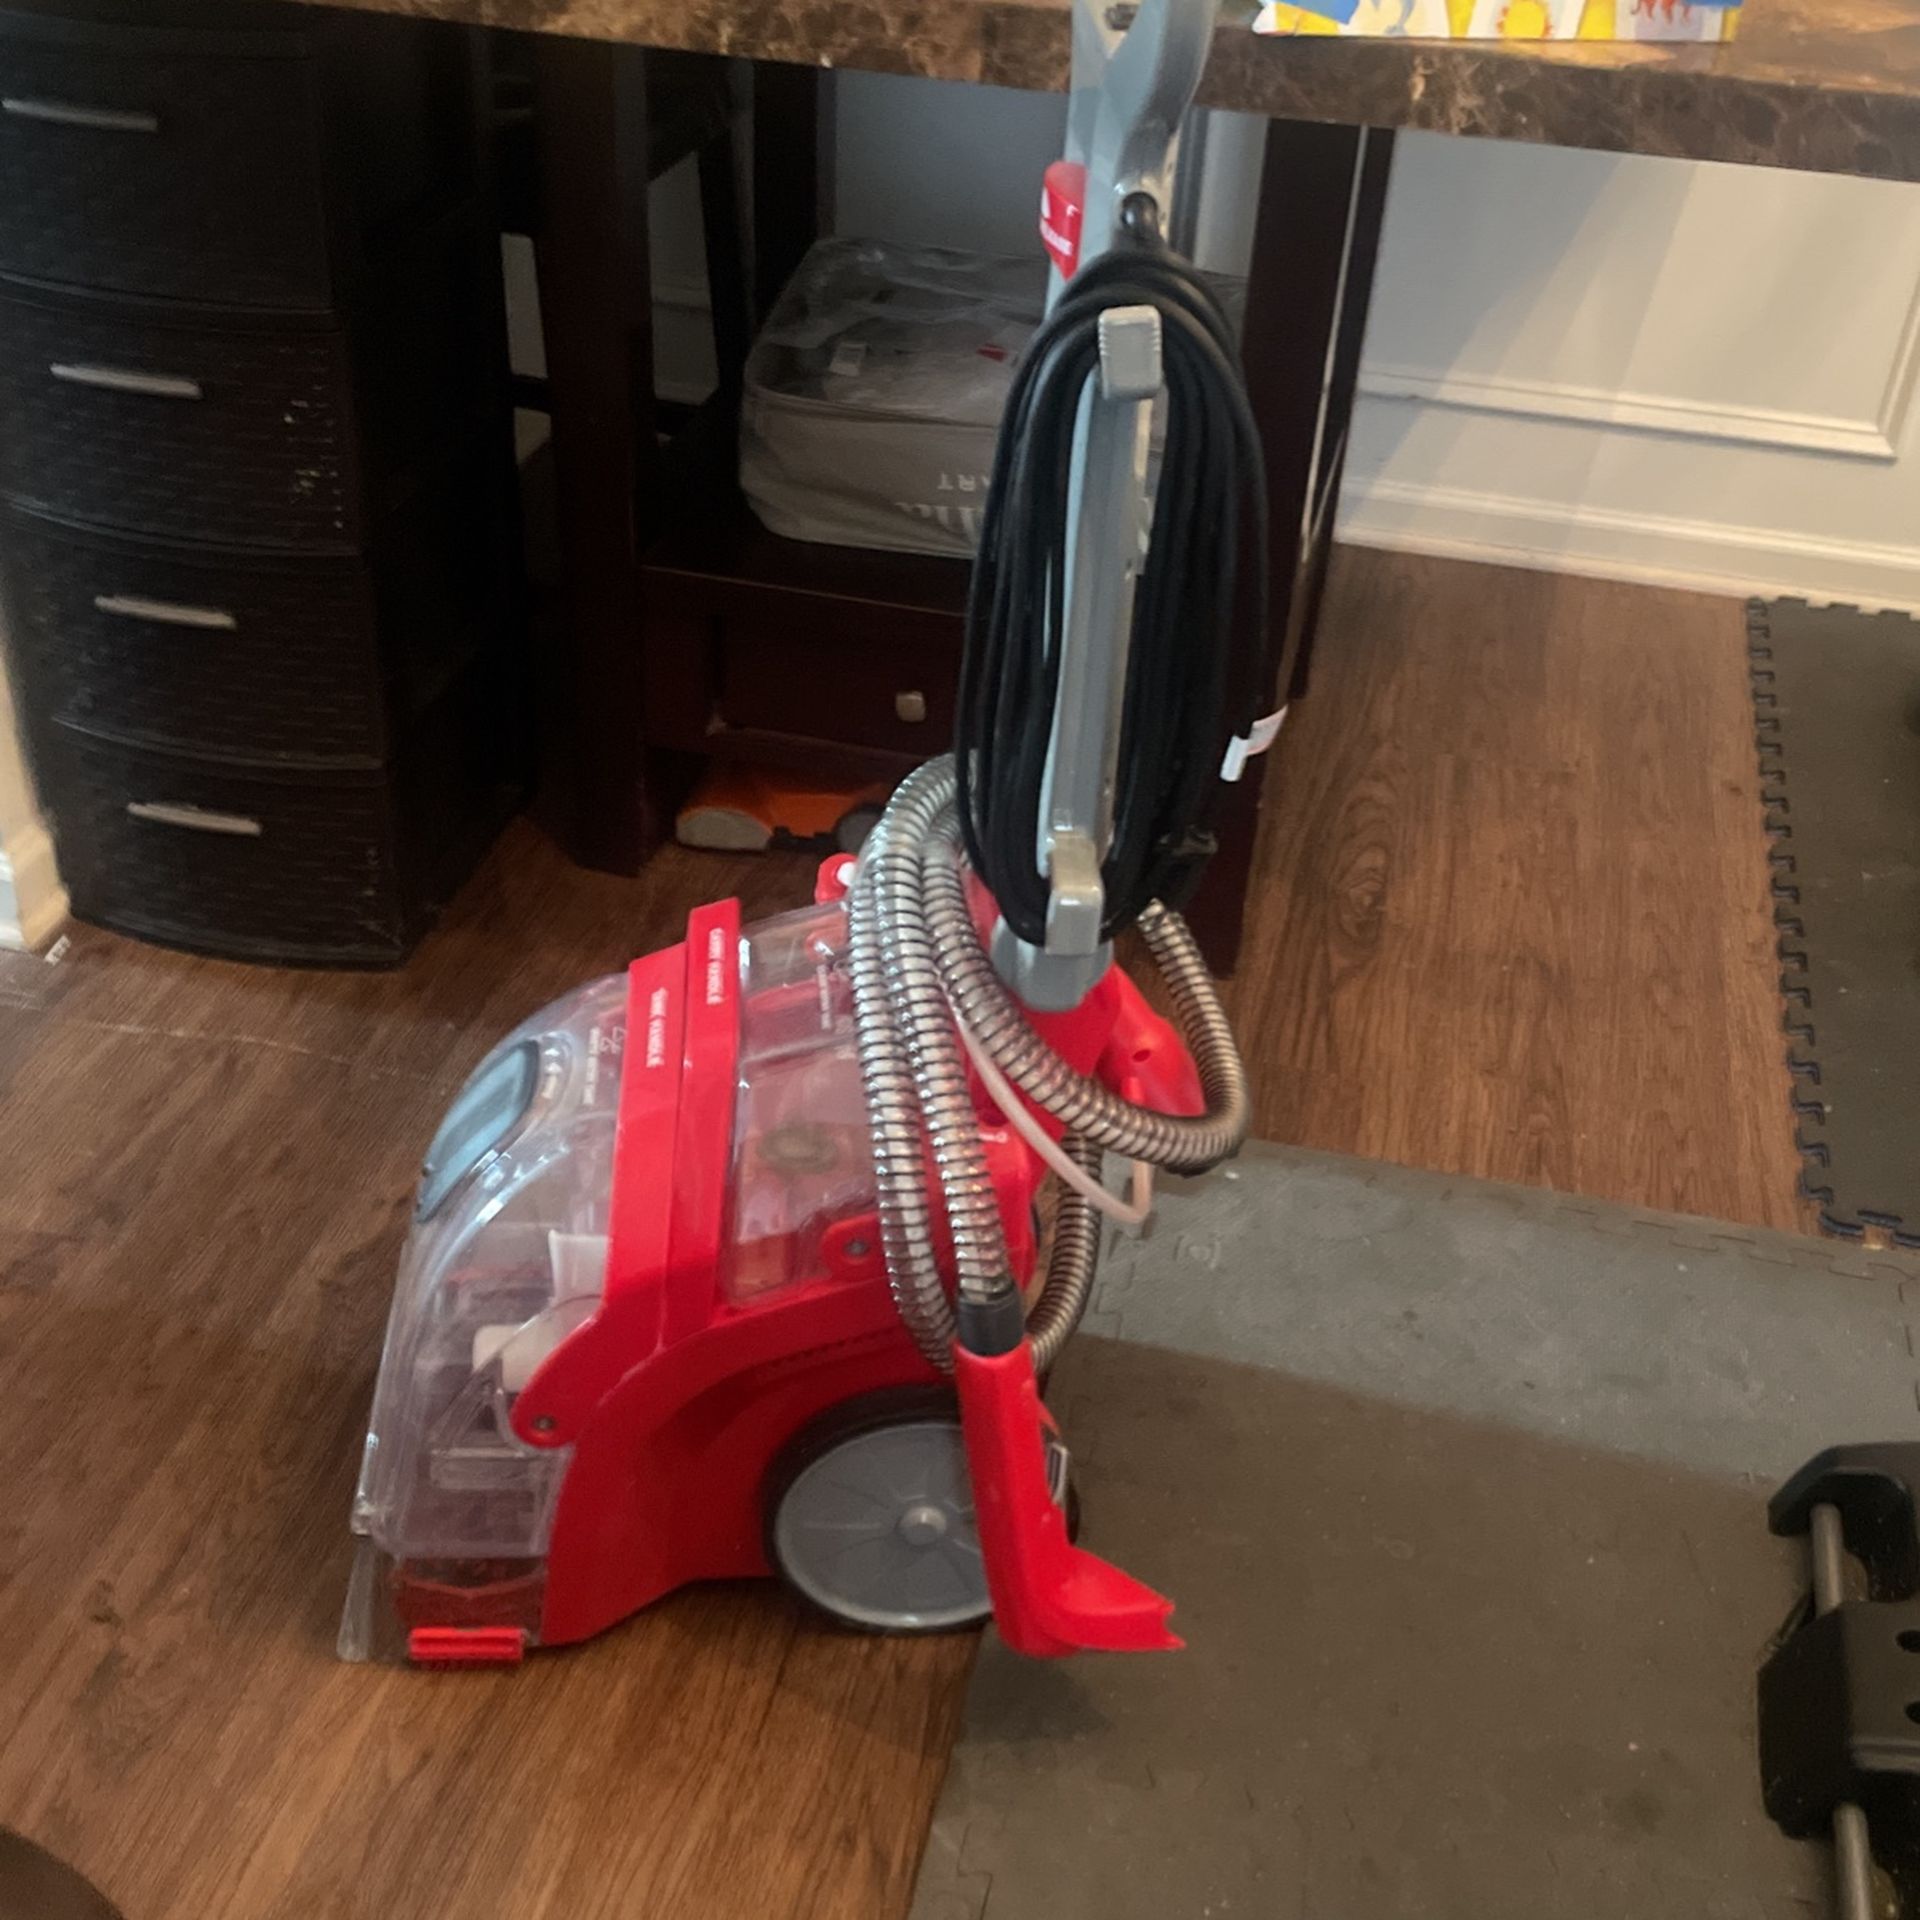 Rug Doctor vacuum/ rug cleaner 